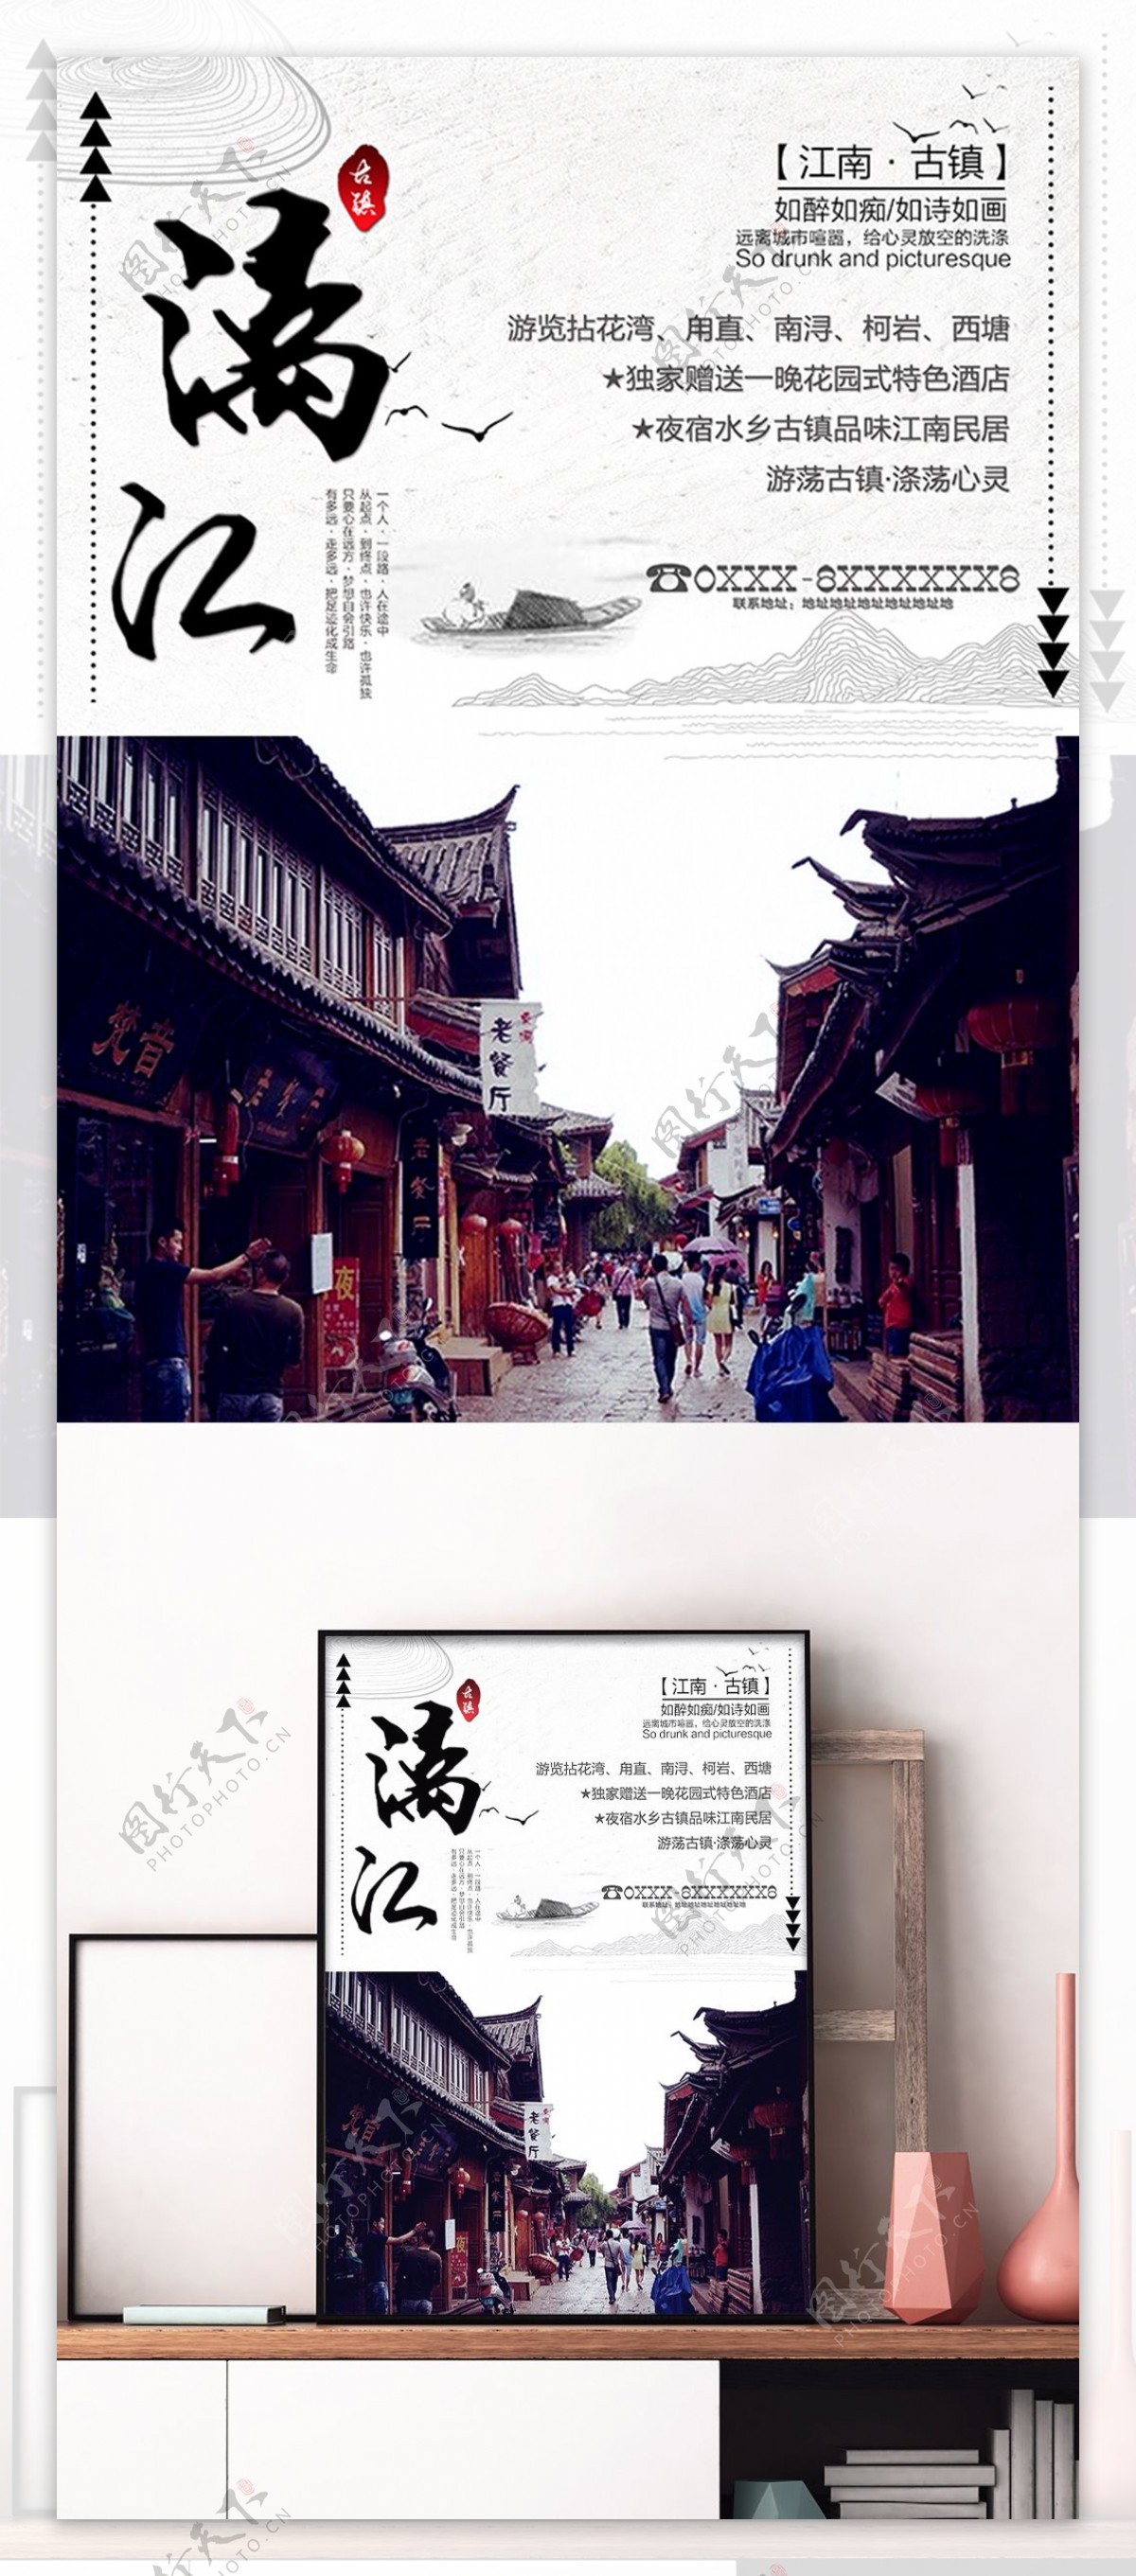 文艺漓江旅游宣传海报